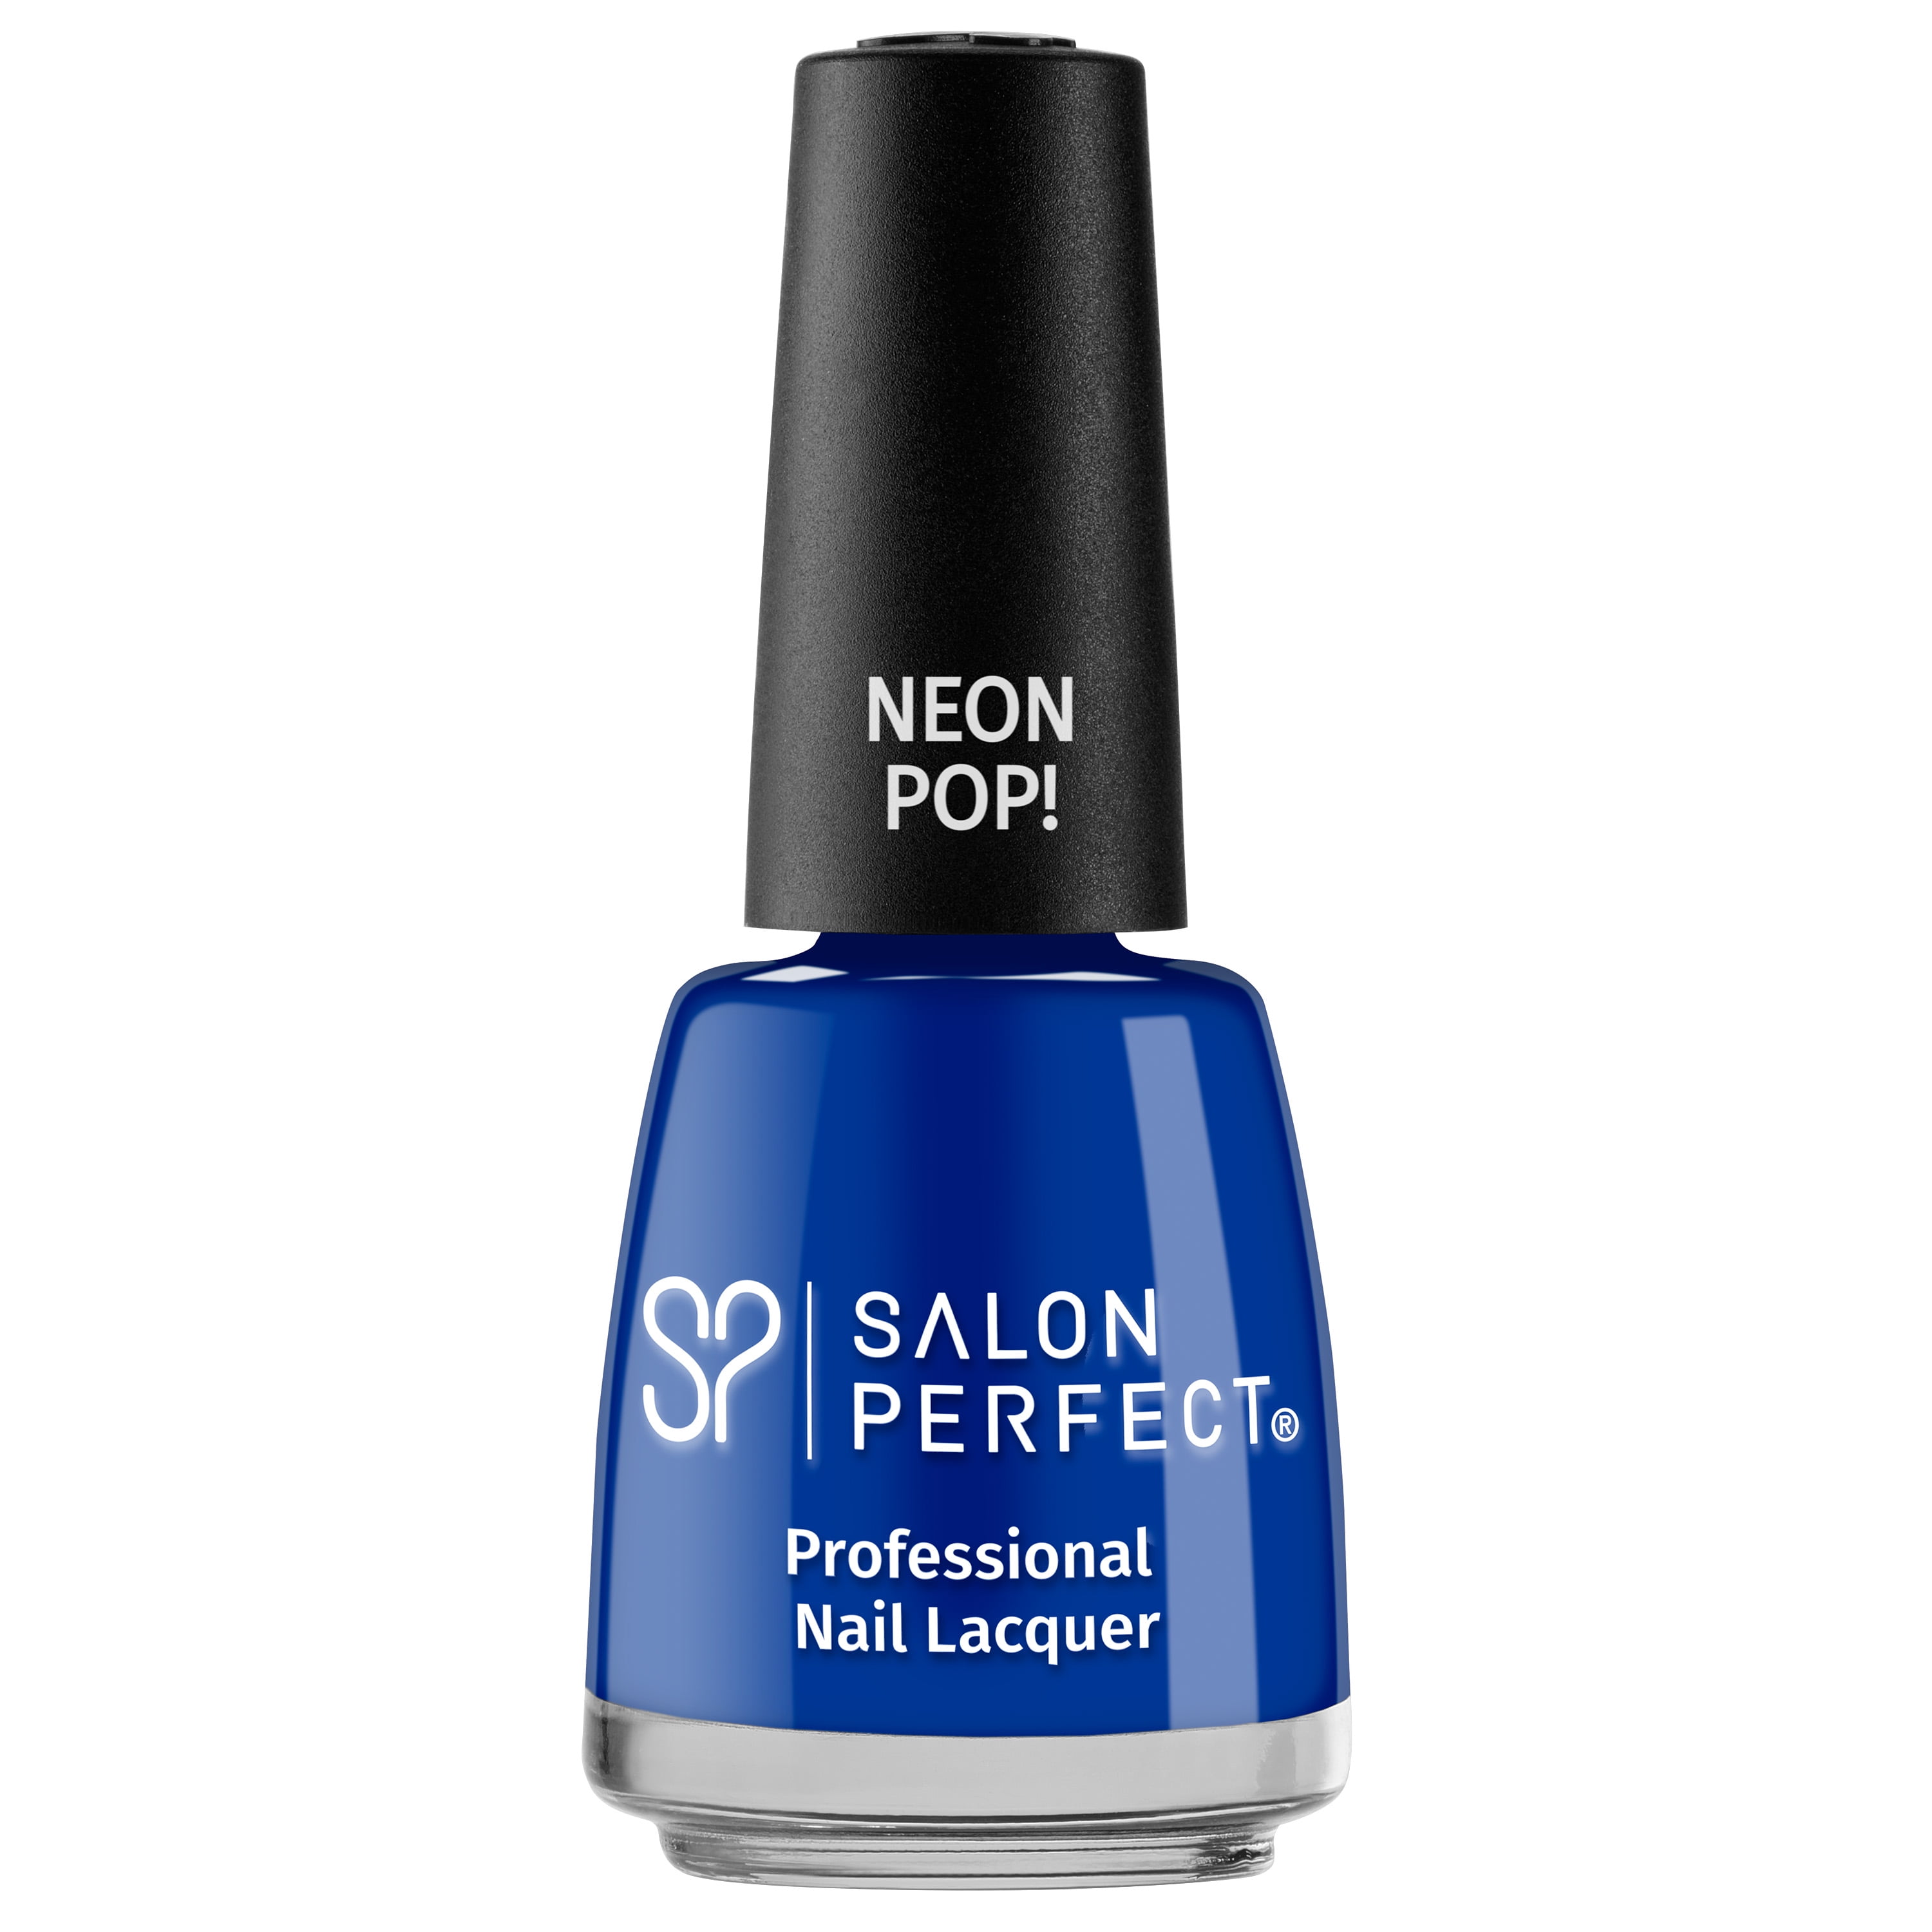 Salon Perfect Nail Polish, Yacht-A, Dark Blue, 0.5 oz